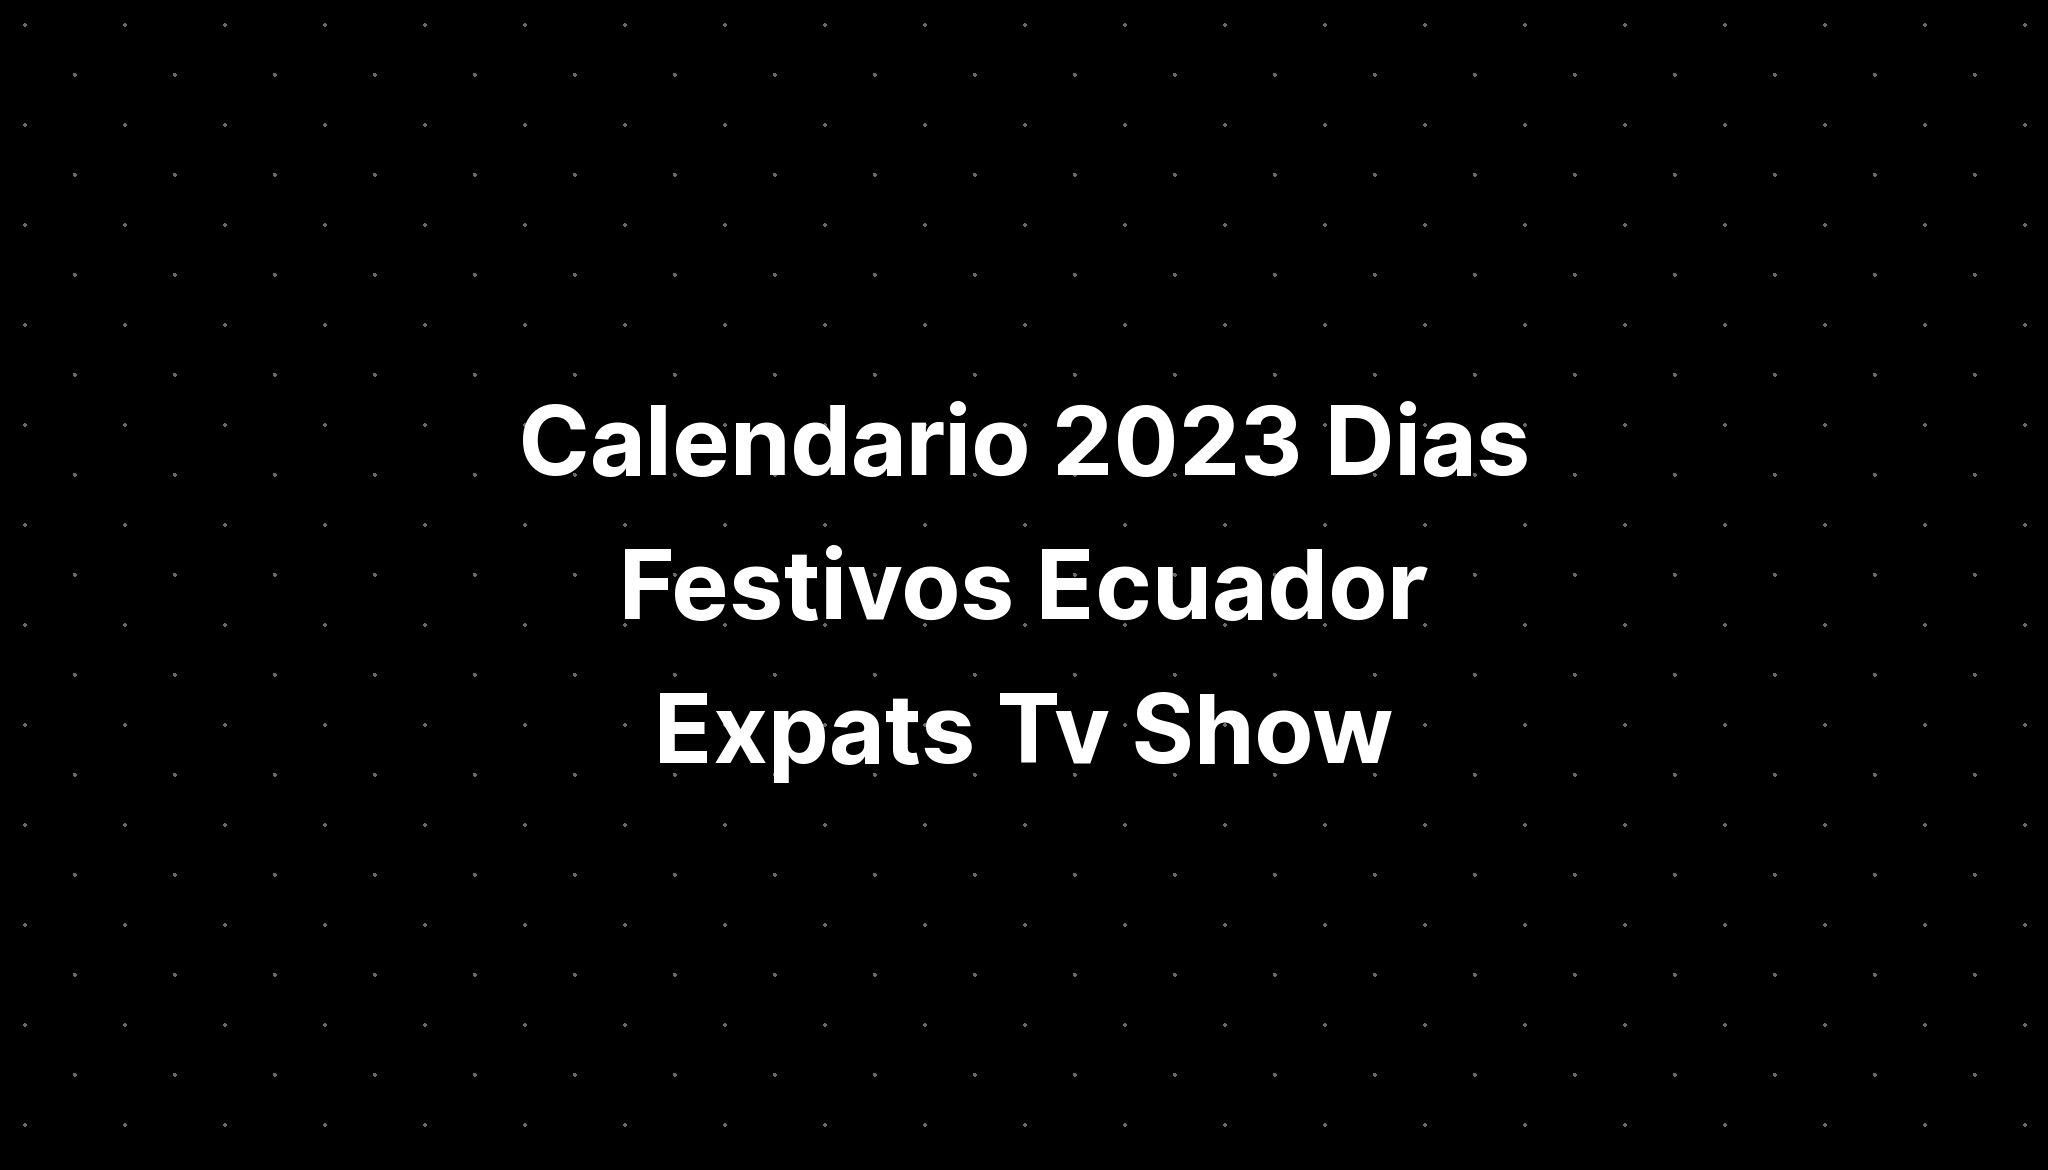 Calendario 2023 Dias Festivos Ecuador Expats Tv Show Imagesee